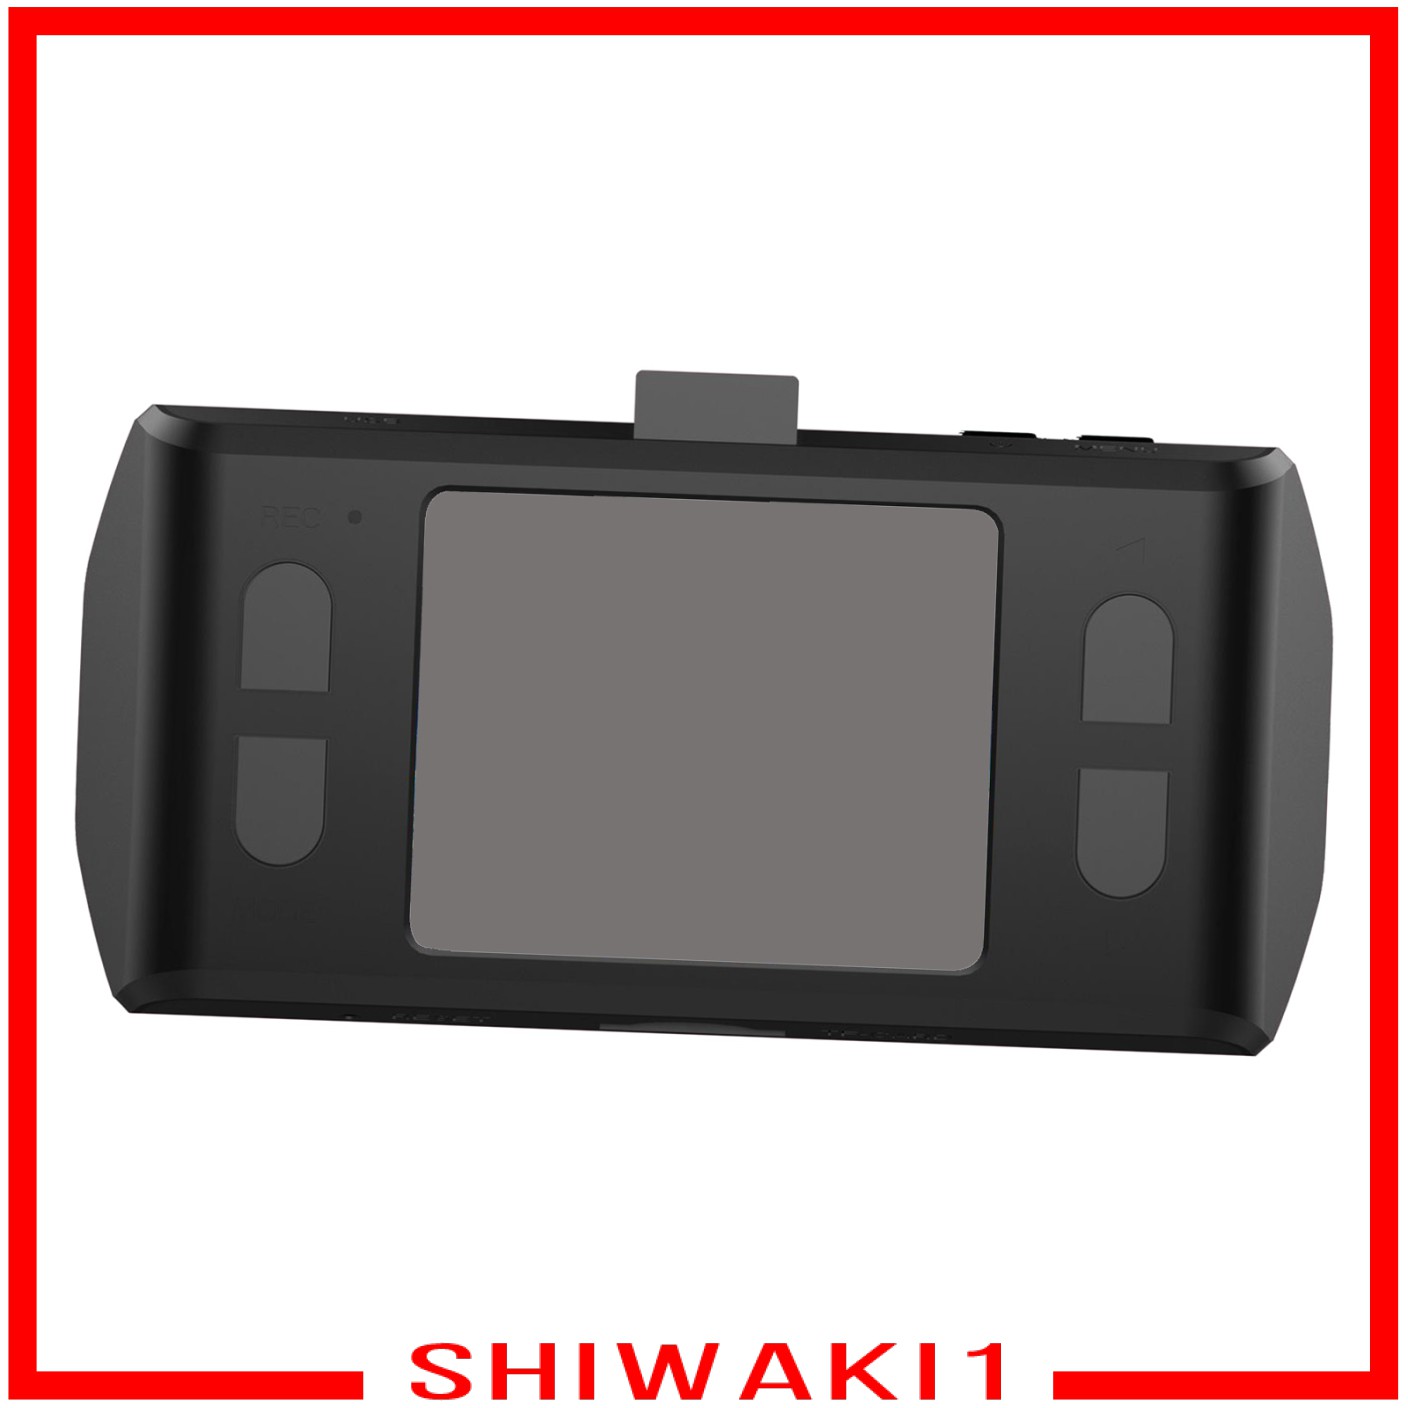 Camera Hành Trình Xe Hơi Shiwaki1 Hd 1080p Hỗ Trợ Quay Ban Đêm